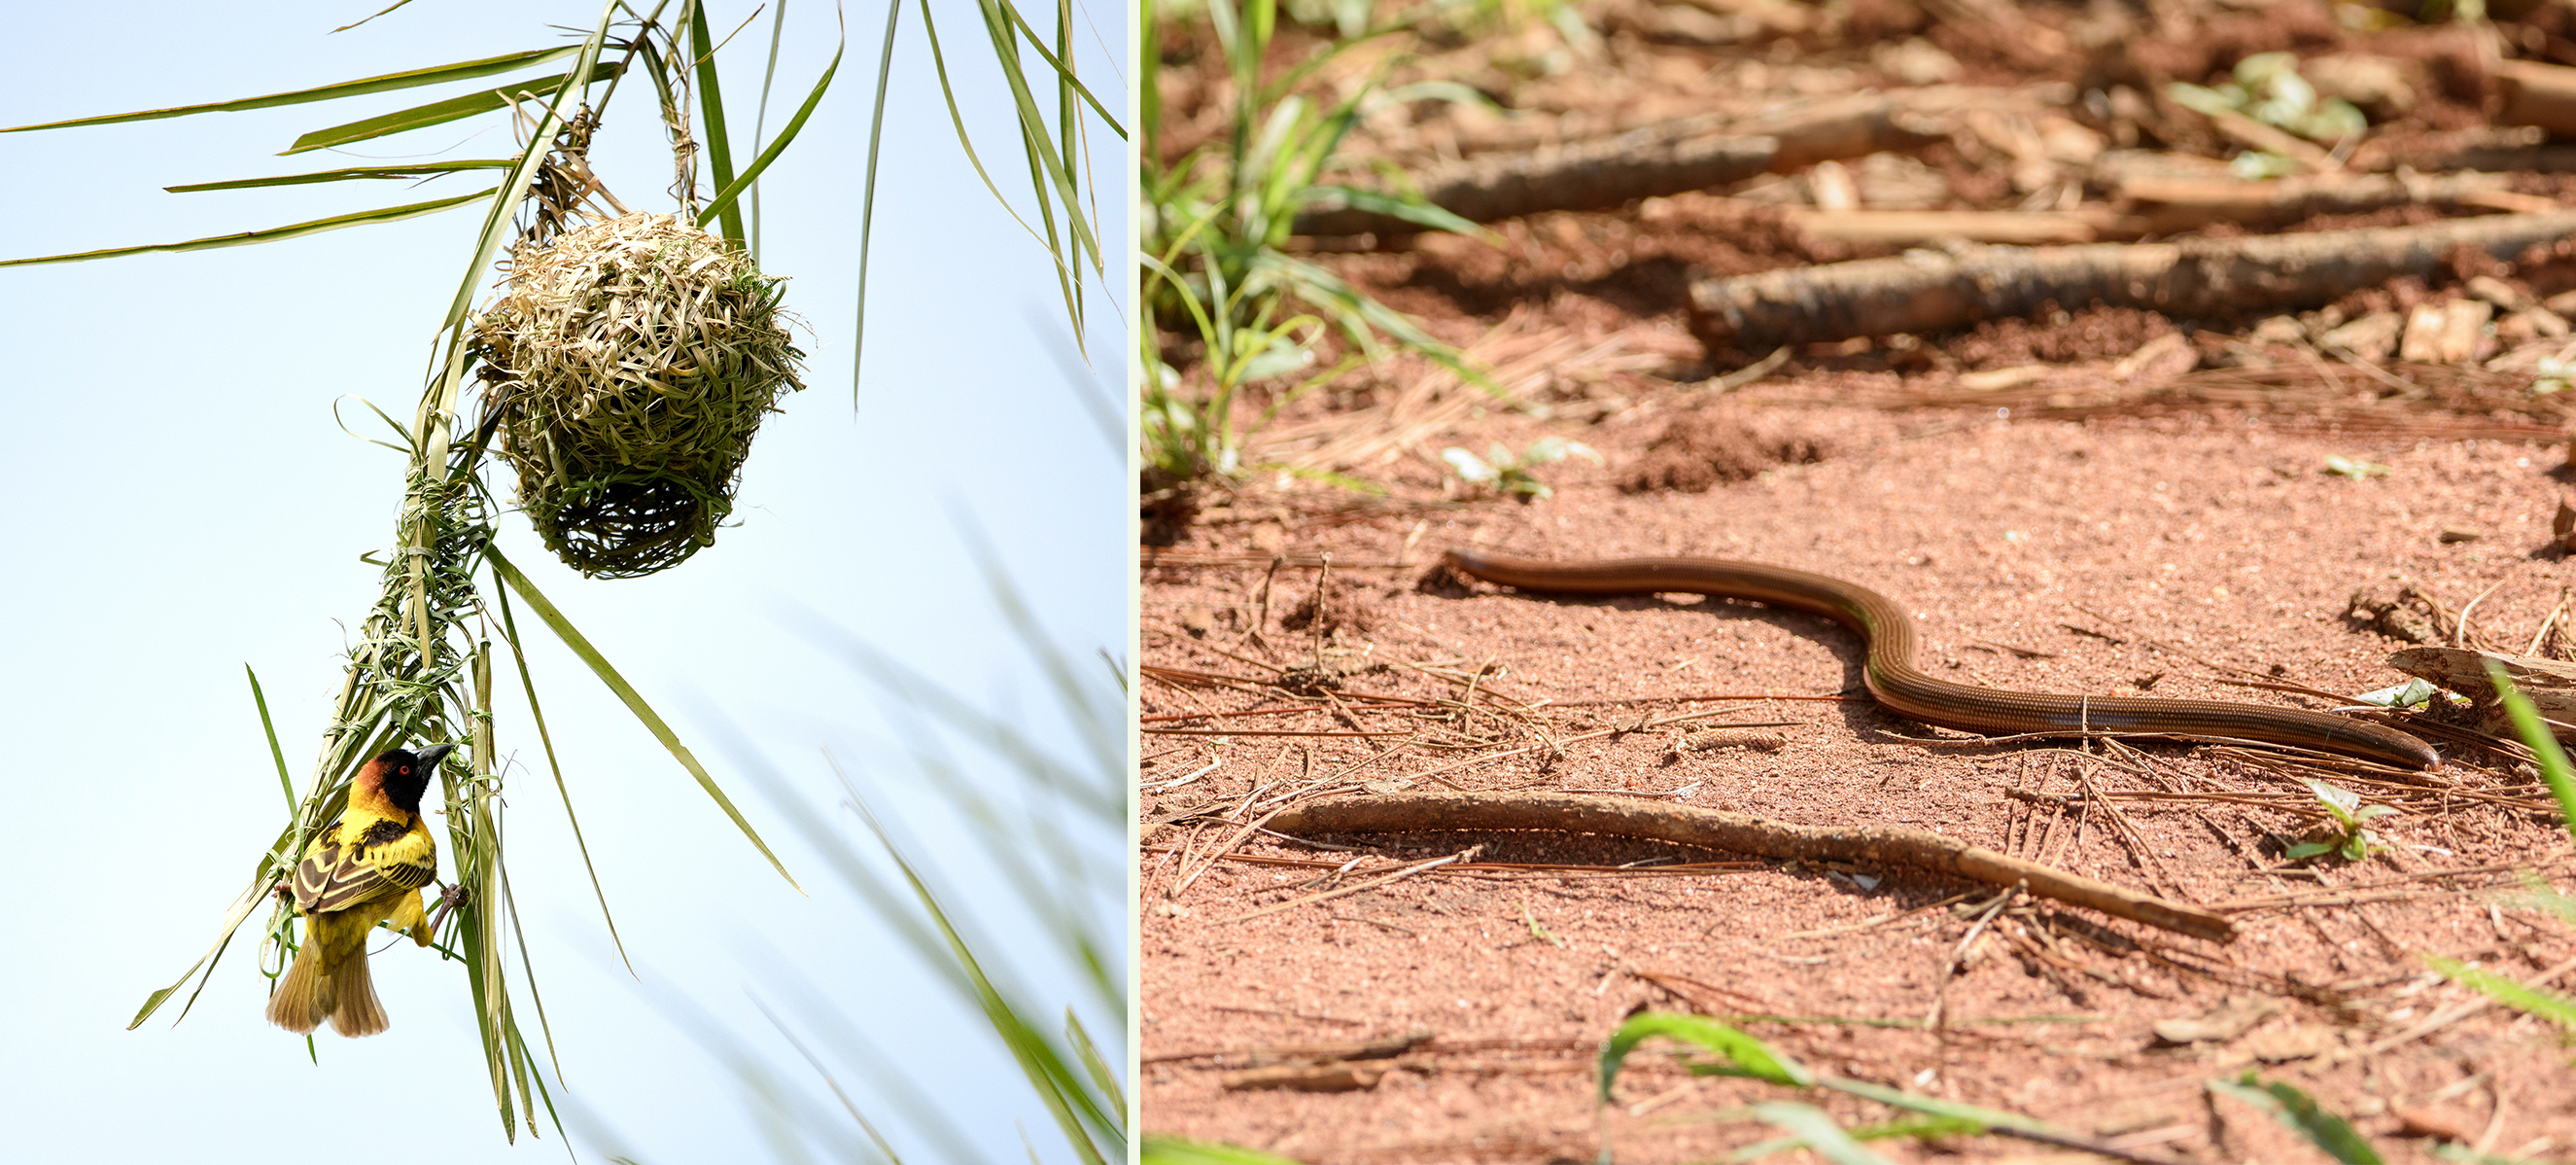 (Left) Village Weaver at nest entrance. (Right) Blind Snake on dirt